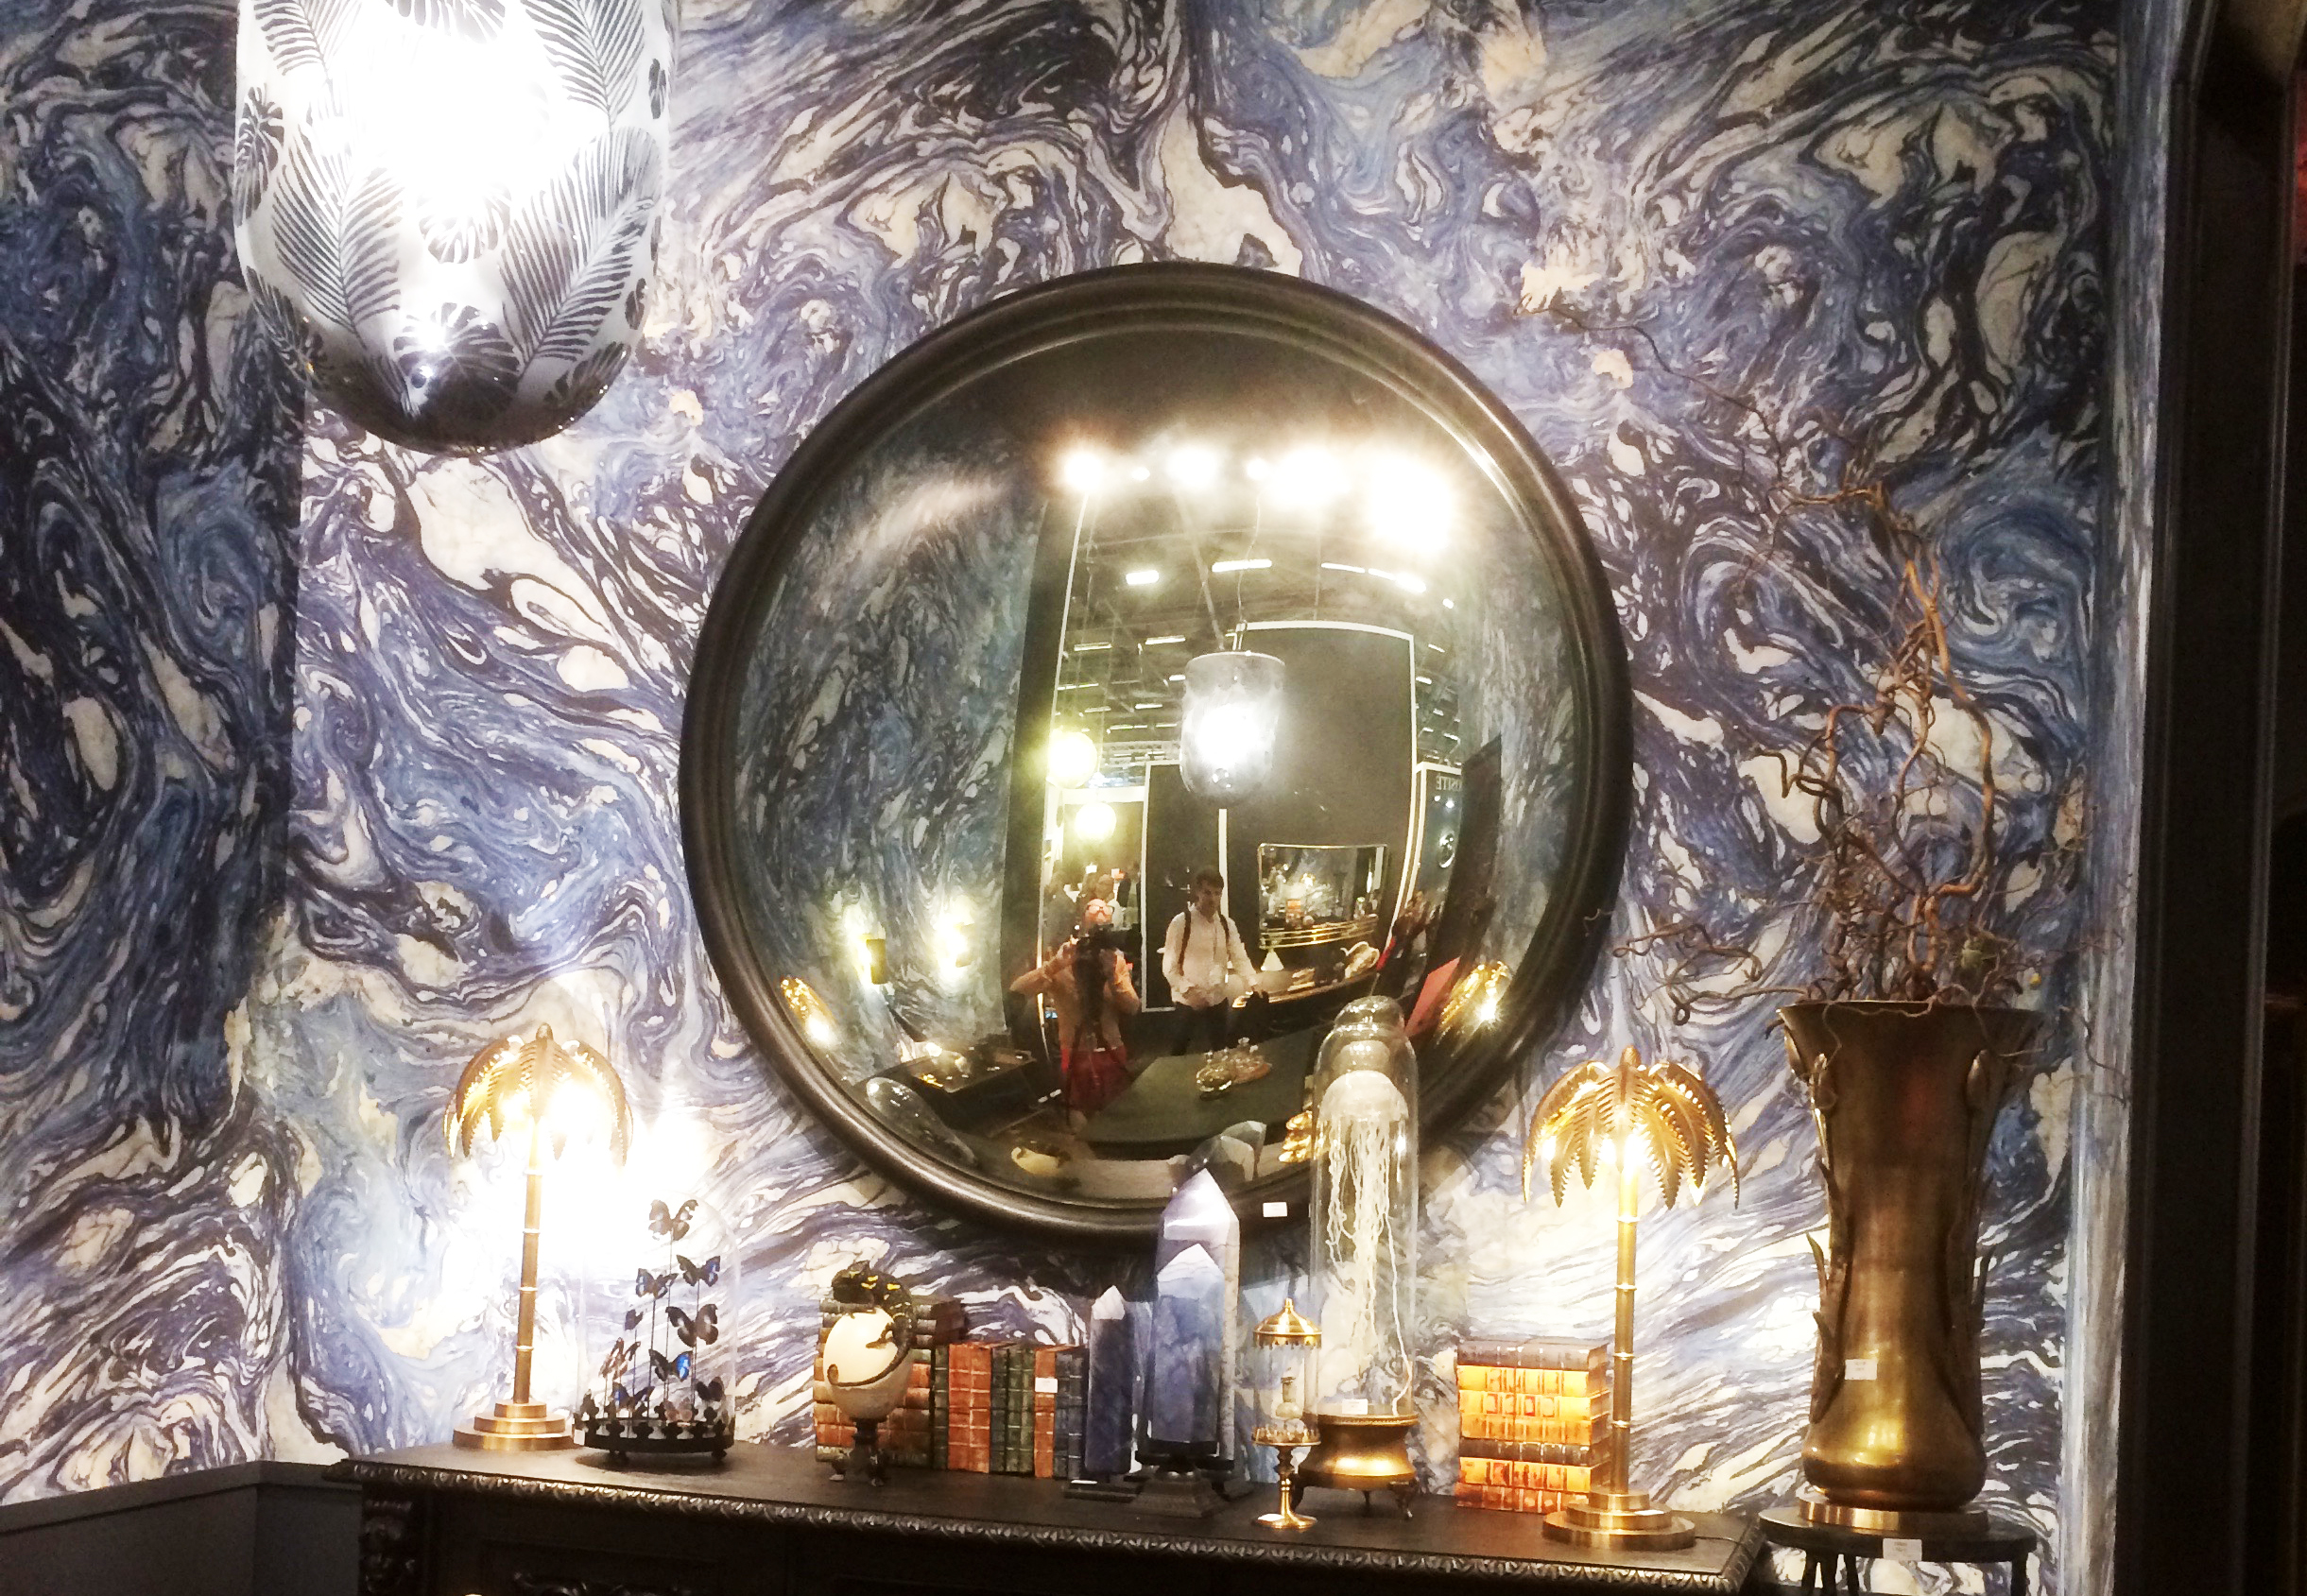 Grand motif de coulures d'encre, miroirs de sorcières et accumulation d'objets étranges - le cabinet de curiosités version 2019